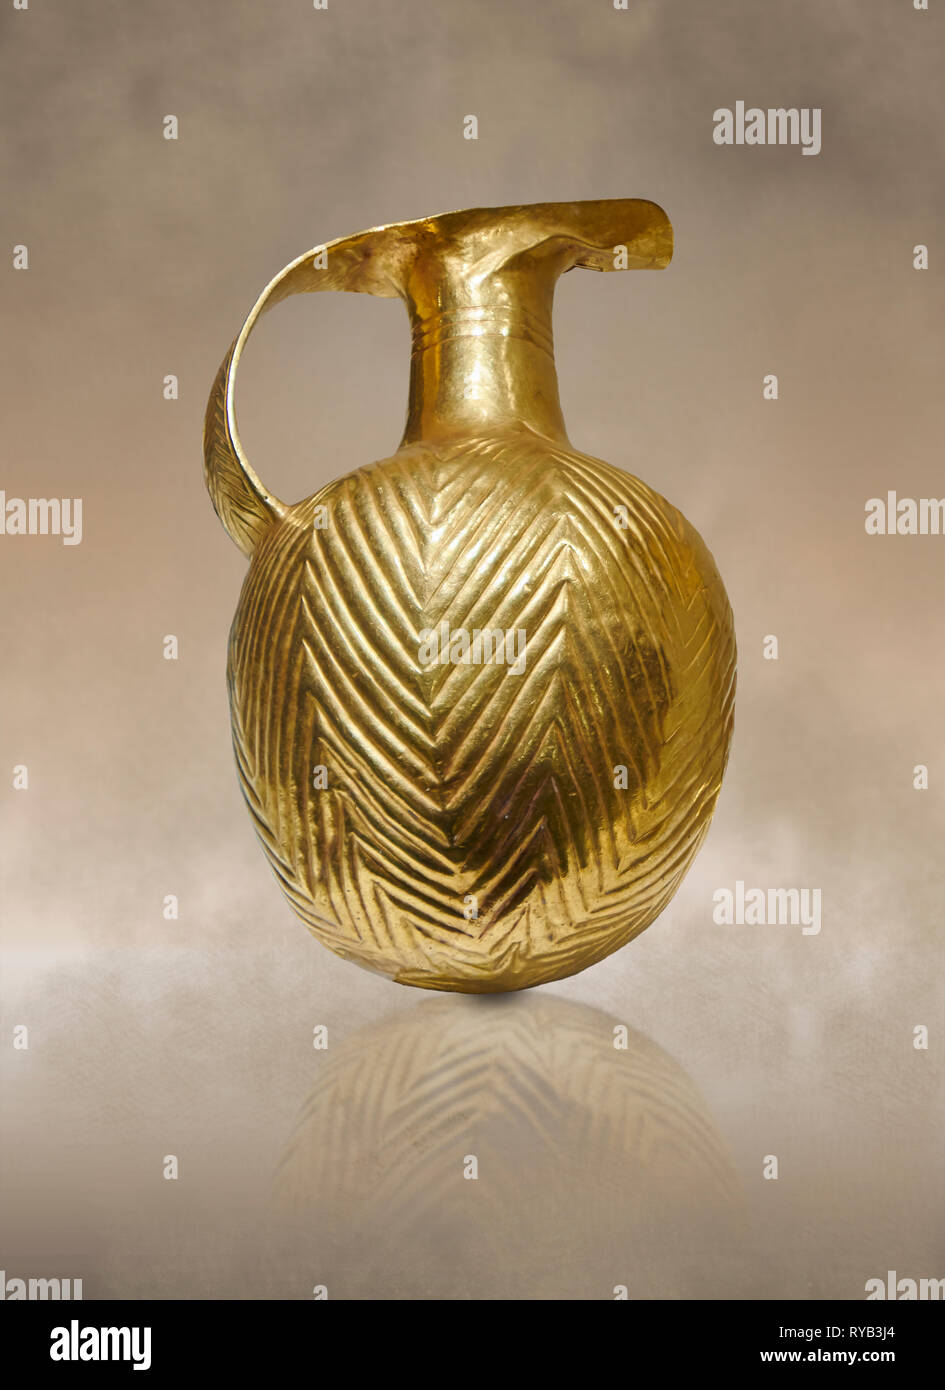 Età del Bronzo Hattian pallone d'oro da una possibile Età del Bronzo tomba reale (2500 BC 2250 BC) - Alacahoyuk - Museo della Civiltà anatolica, Ankara, Tu Foto Stock